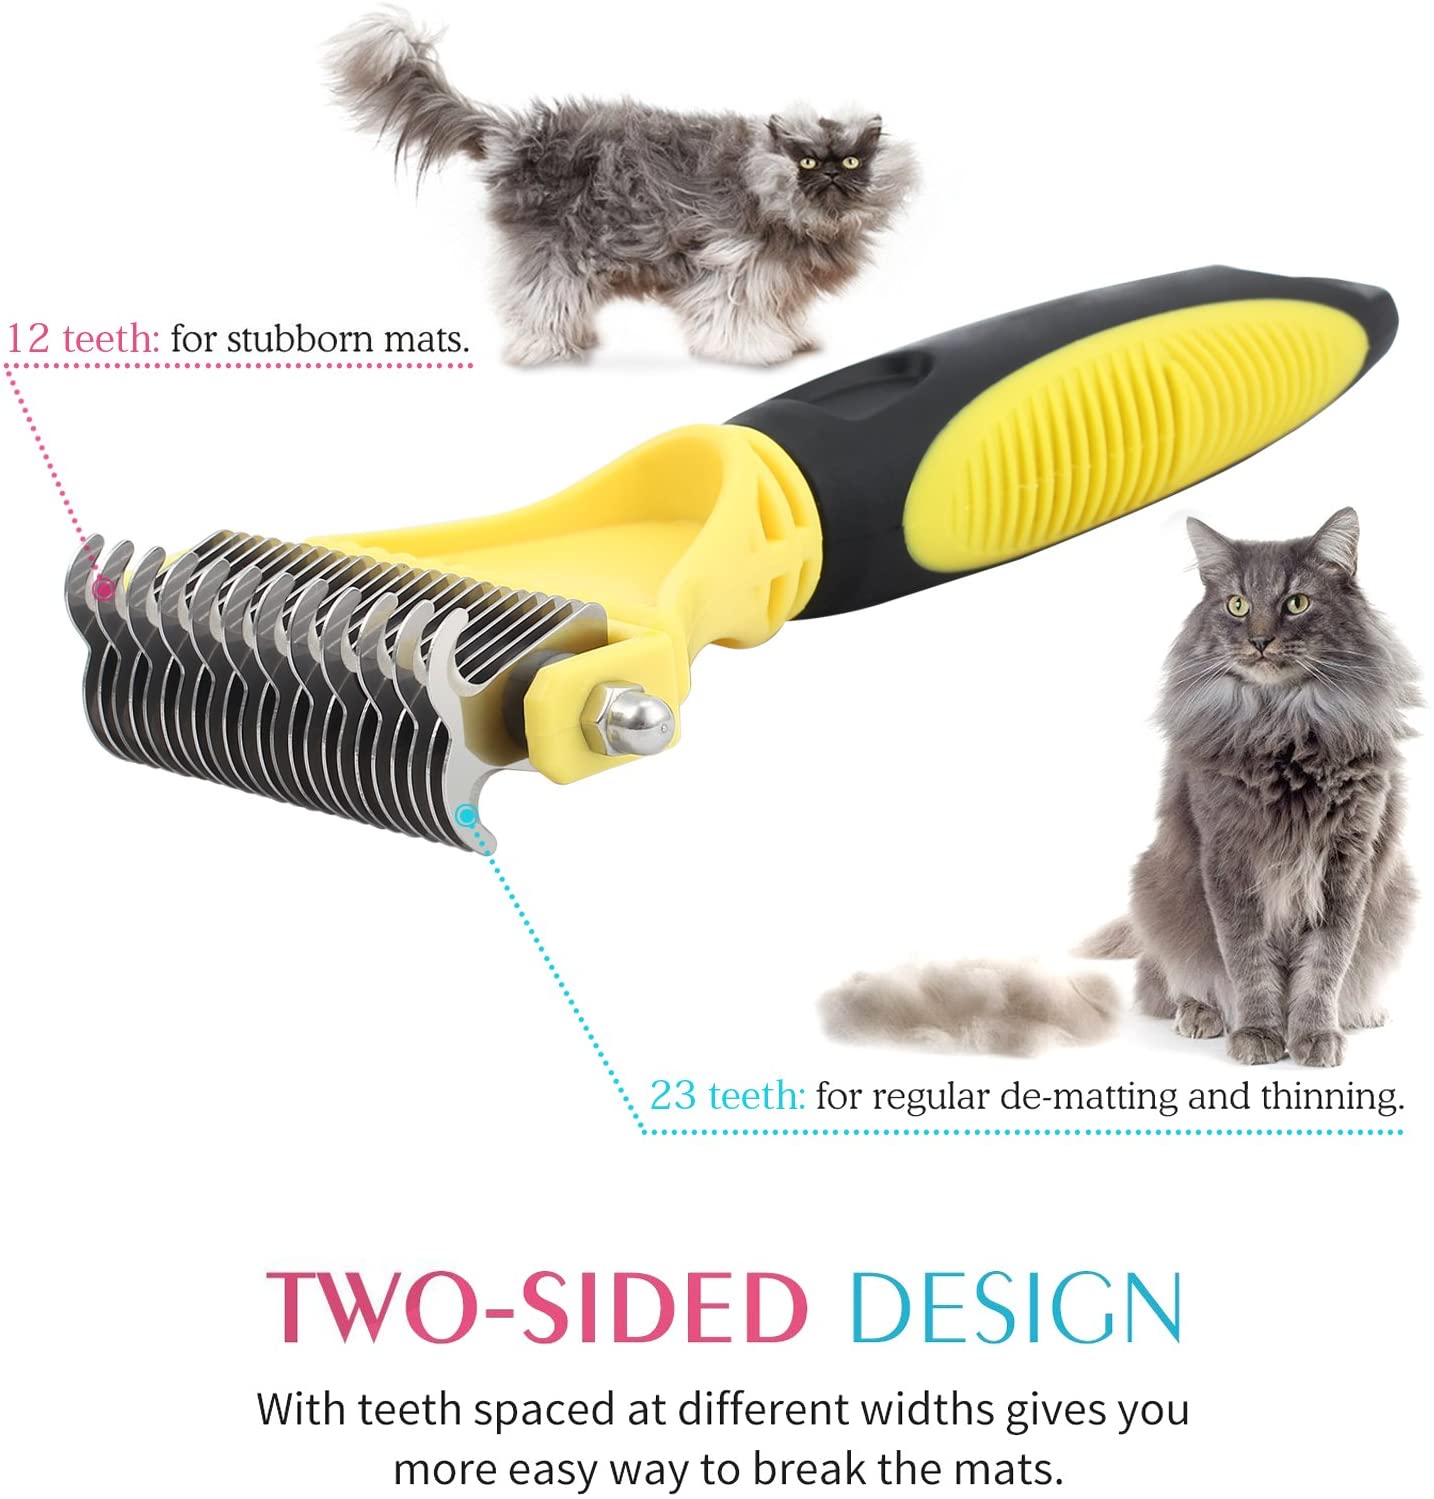  VinTeam Cepillo para Perros Gatos Peine de Limpieza para Mascotas Kit de Kerramientas de Peine Acero Inoxidable para Perros Gatos Conejos 